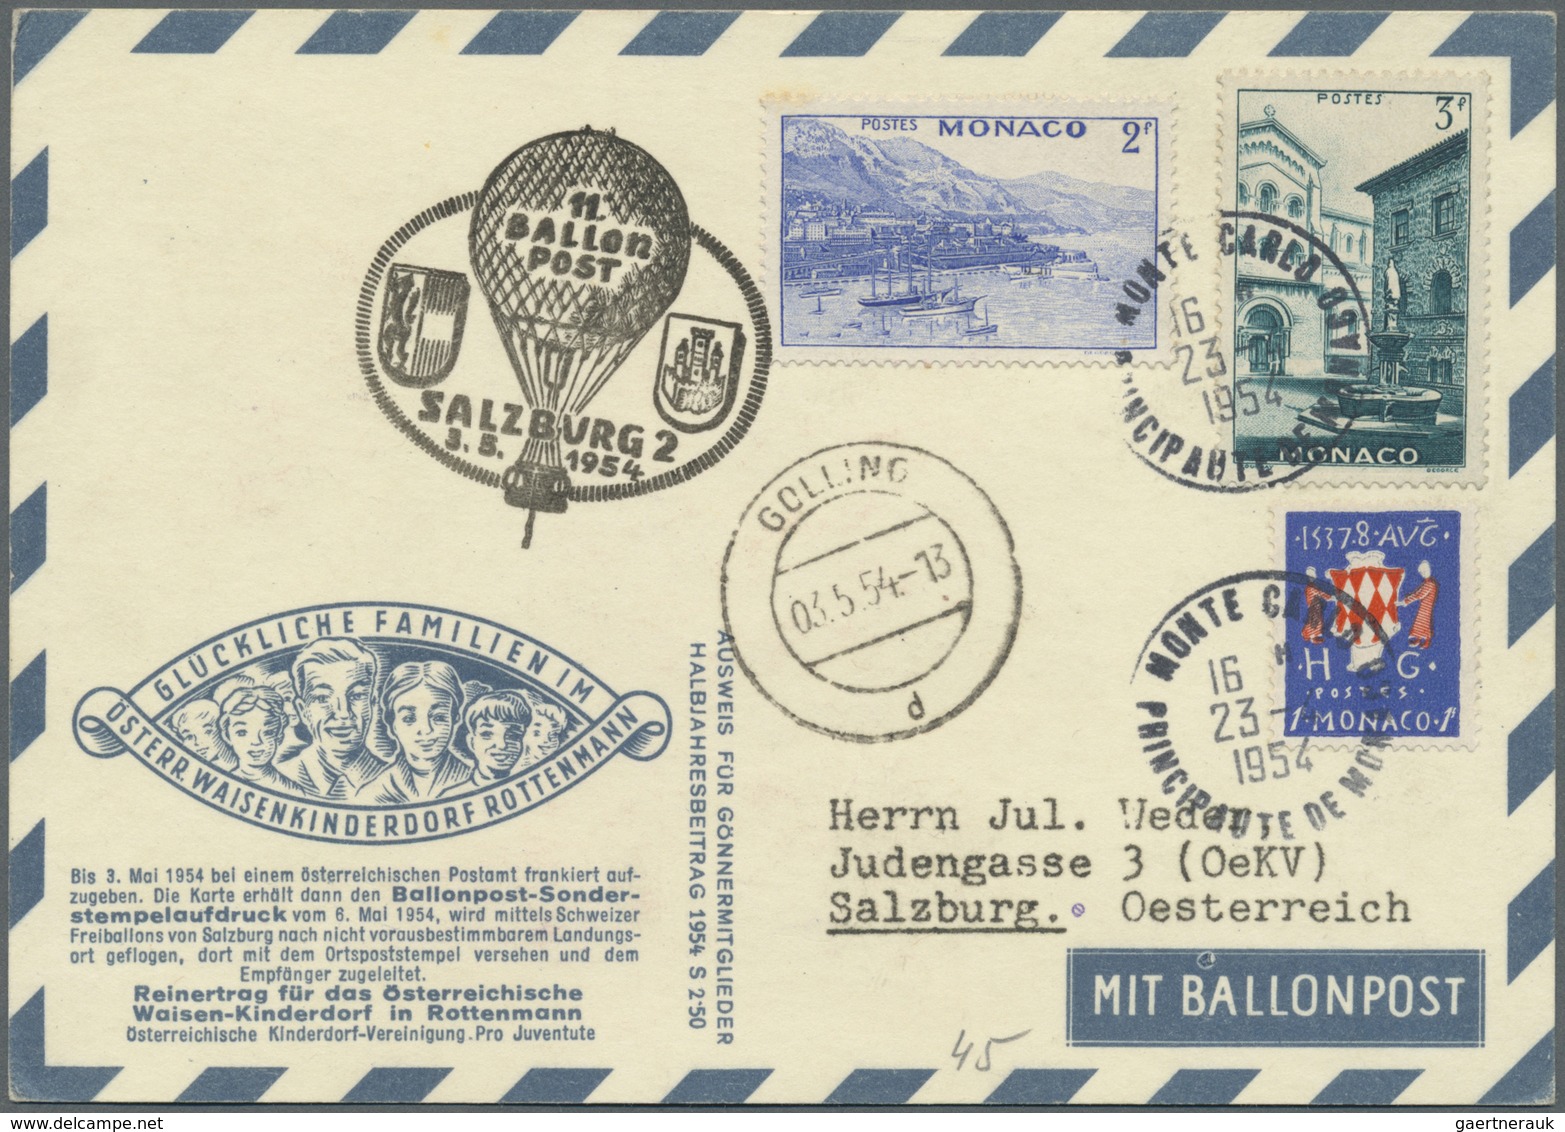 GA/Br Österreich: 1948/1988, saubere und vielseitige Sammlung von 62 Briefen und Karten der Pro Juventute-